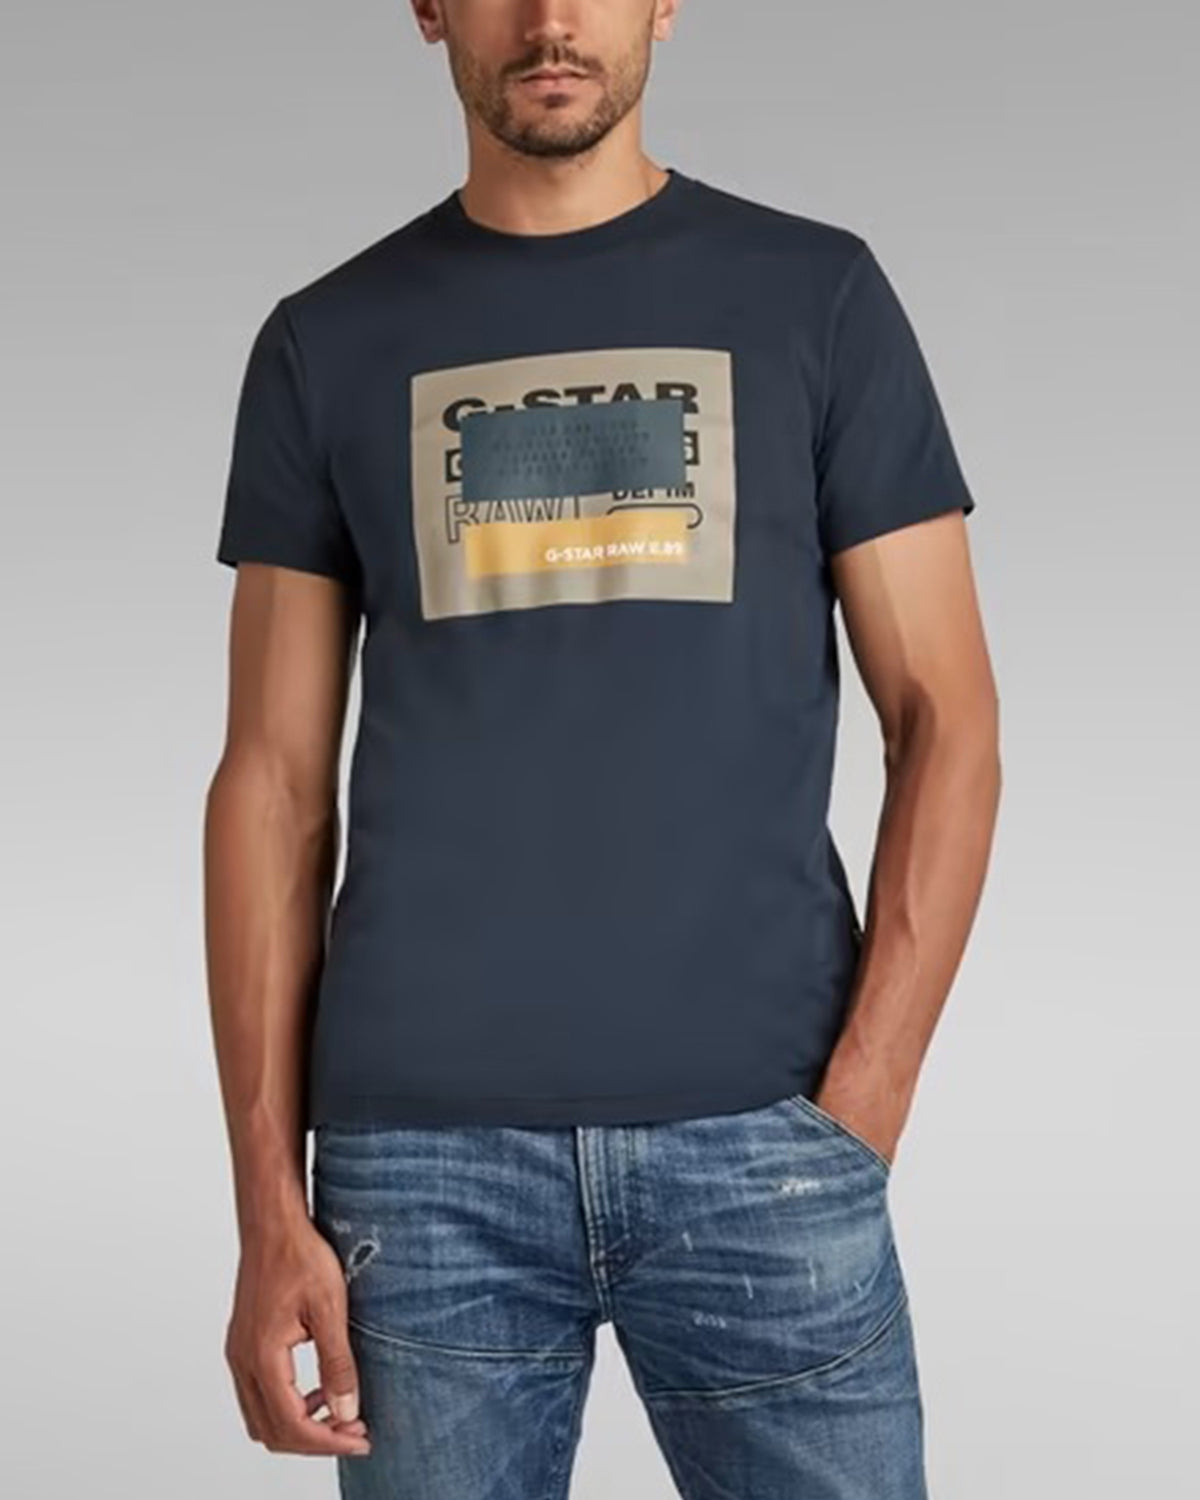 T-shirt Crvd Originals